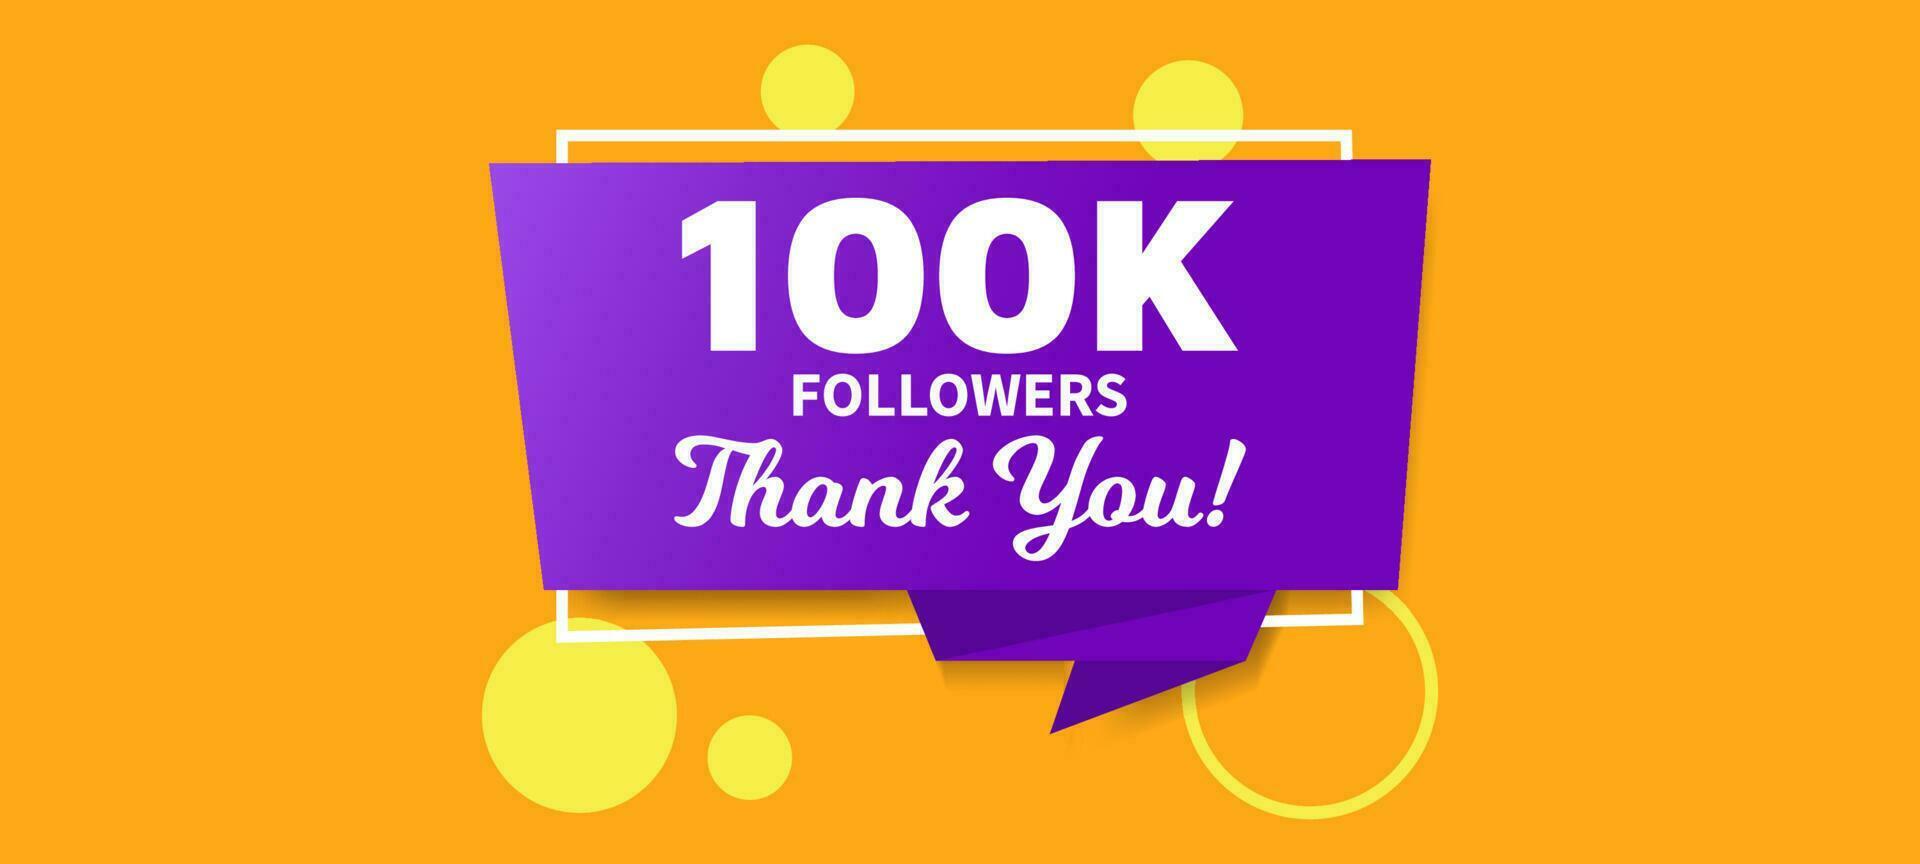 100k seguidores gracias publicación en redes sociales vector